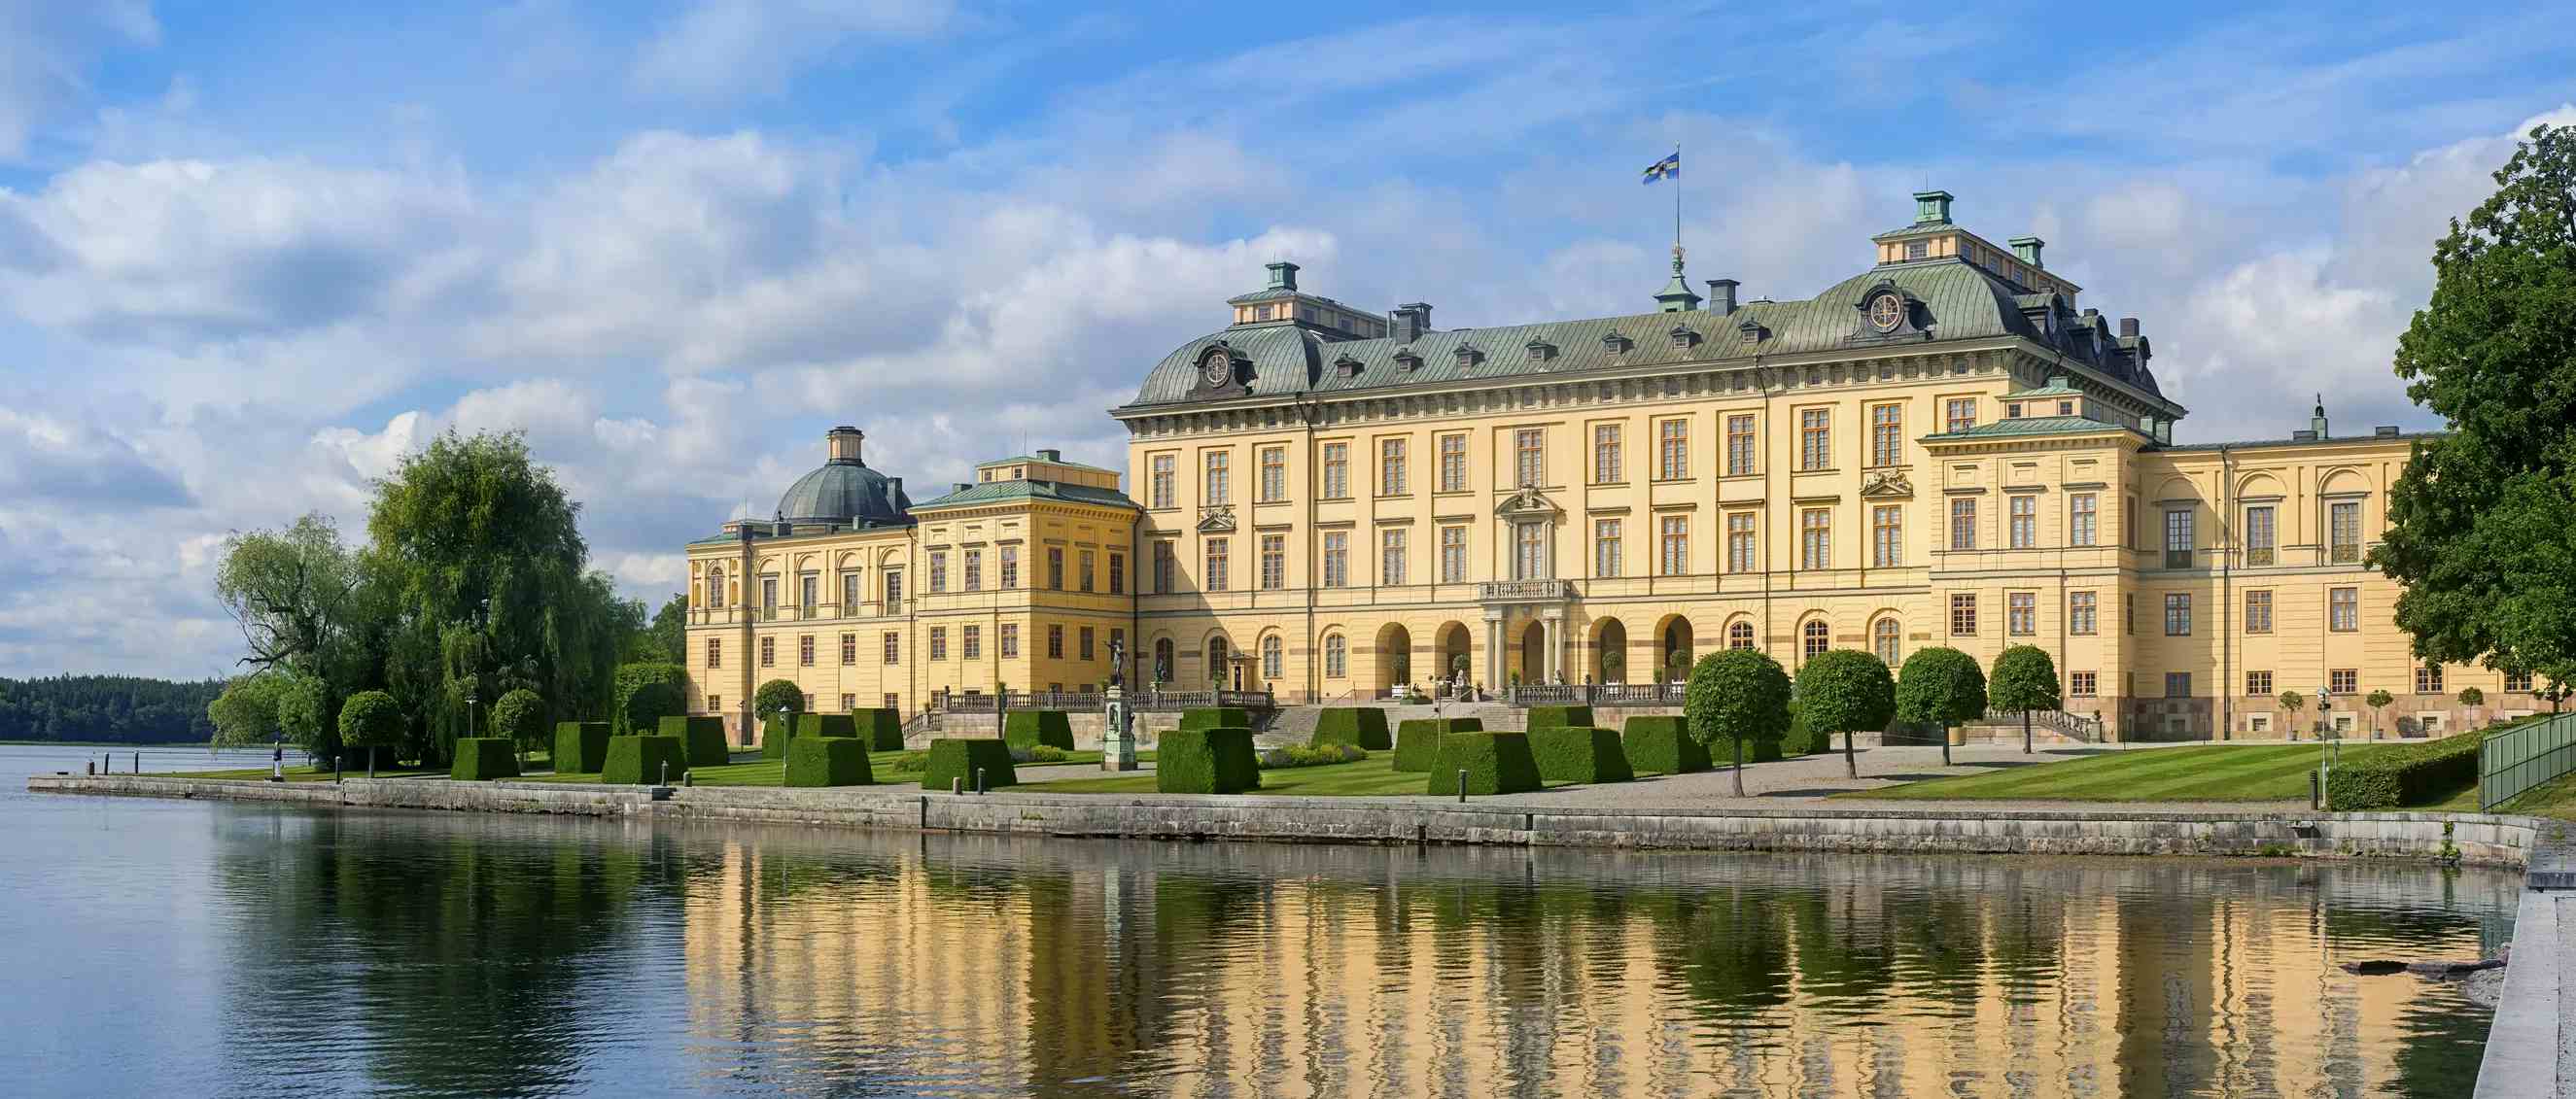 Château de Drottningholm image